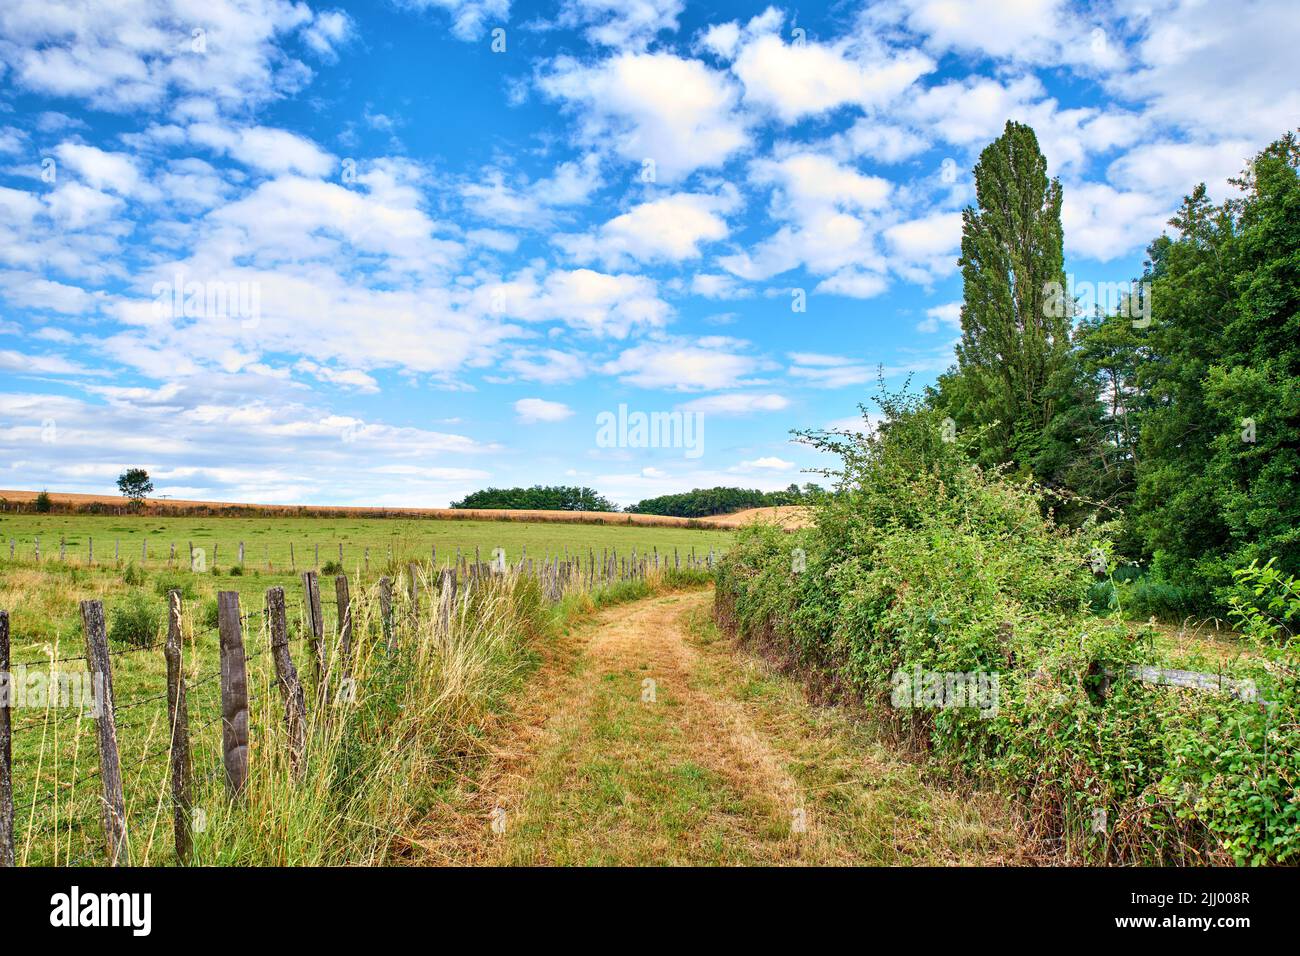 Eine unbefestigte Landstraße, die zu landwirtschaftlichen Feldern oder Weiden in abgelegener Gegend mit blauem Himmel und Kopierfläche führt. Landschaftsansicht von ruhig Stockfoto